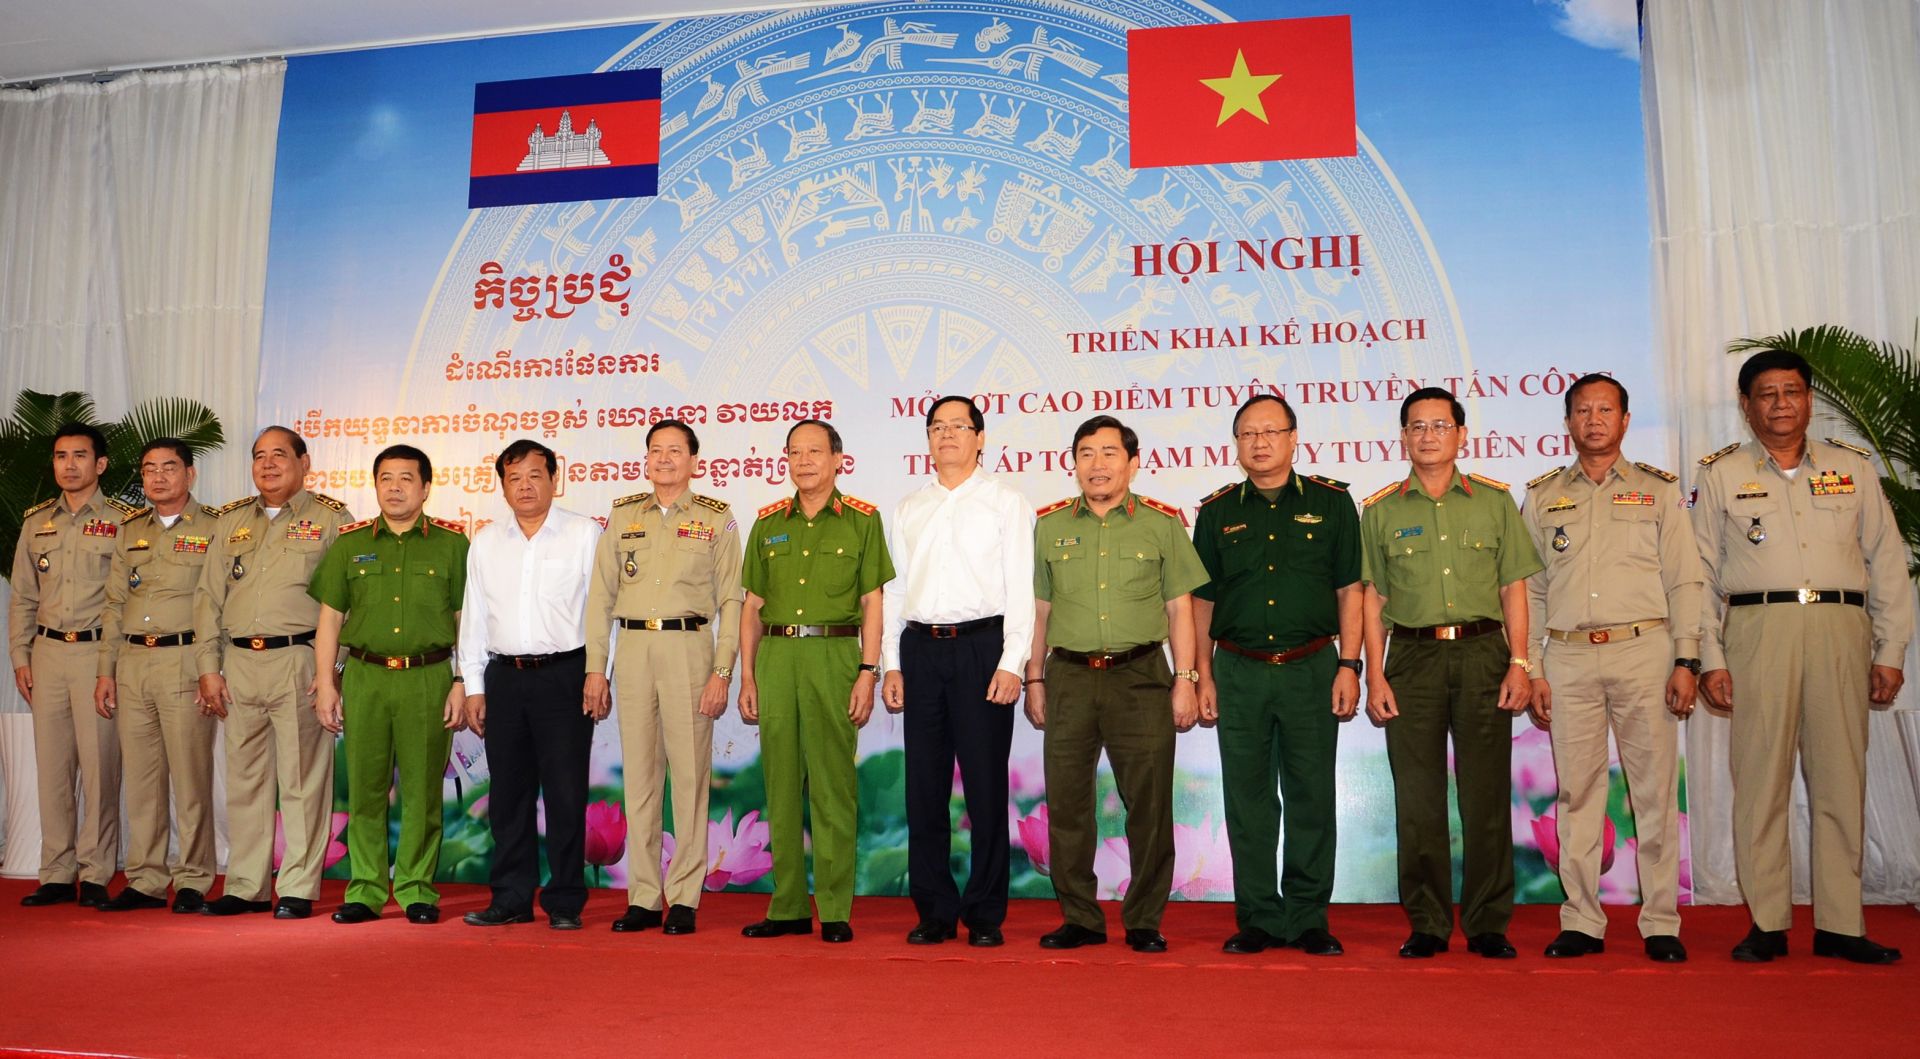 Điểm báo in Tây Ninh ngày 14.06.2019